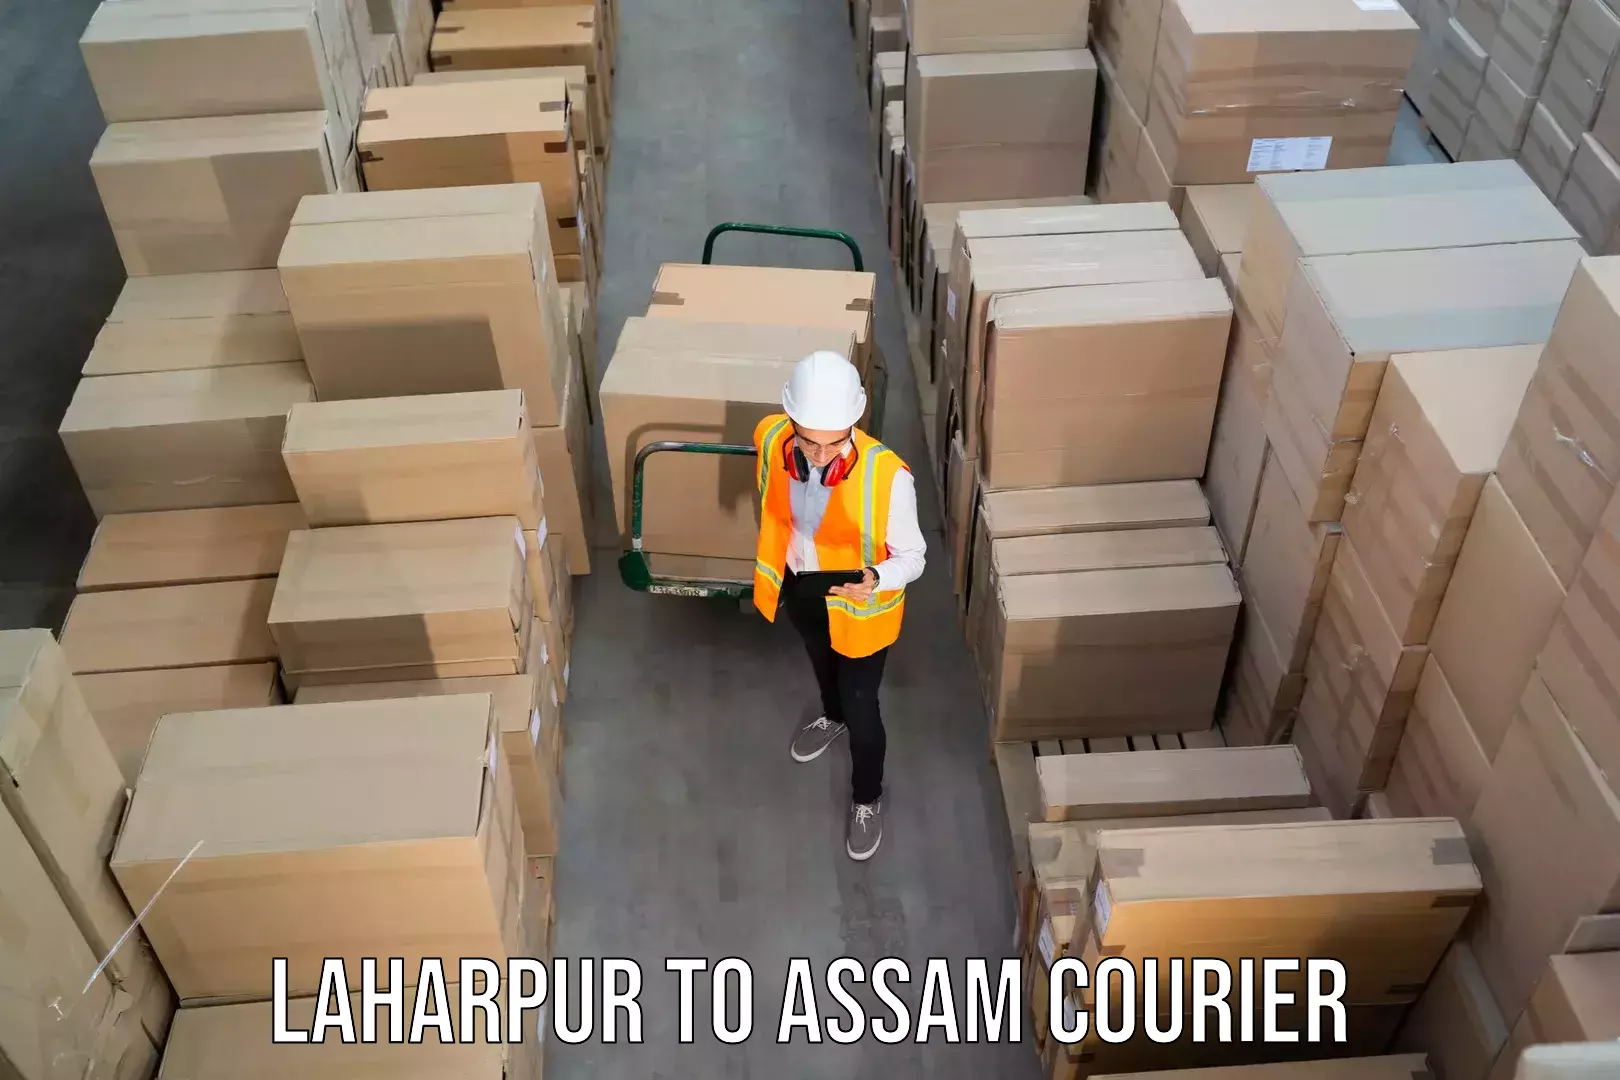 Bulk courier orders Laharpur to Badarpur Karimganj